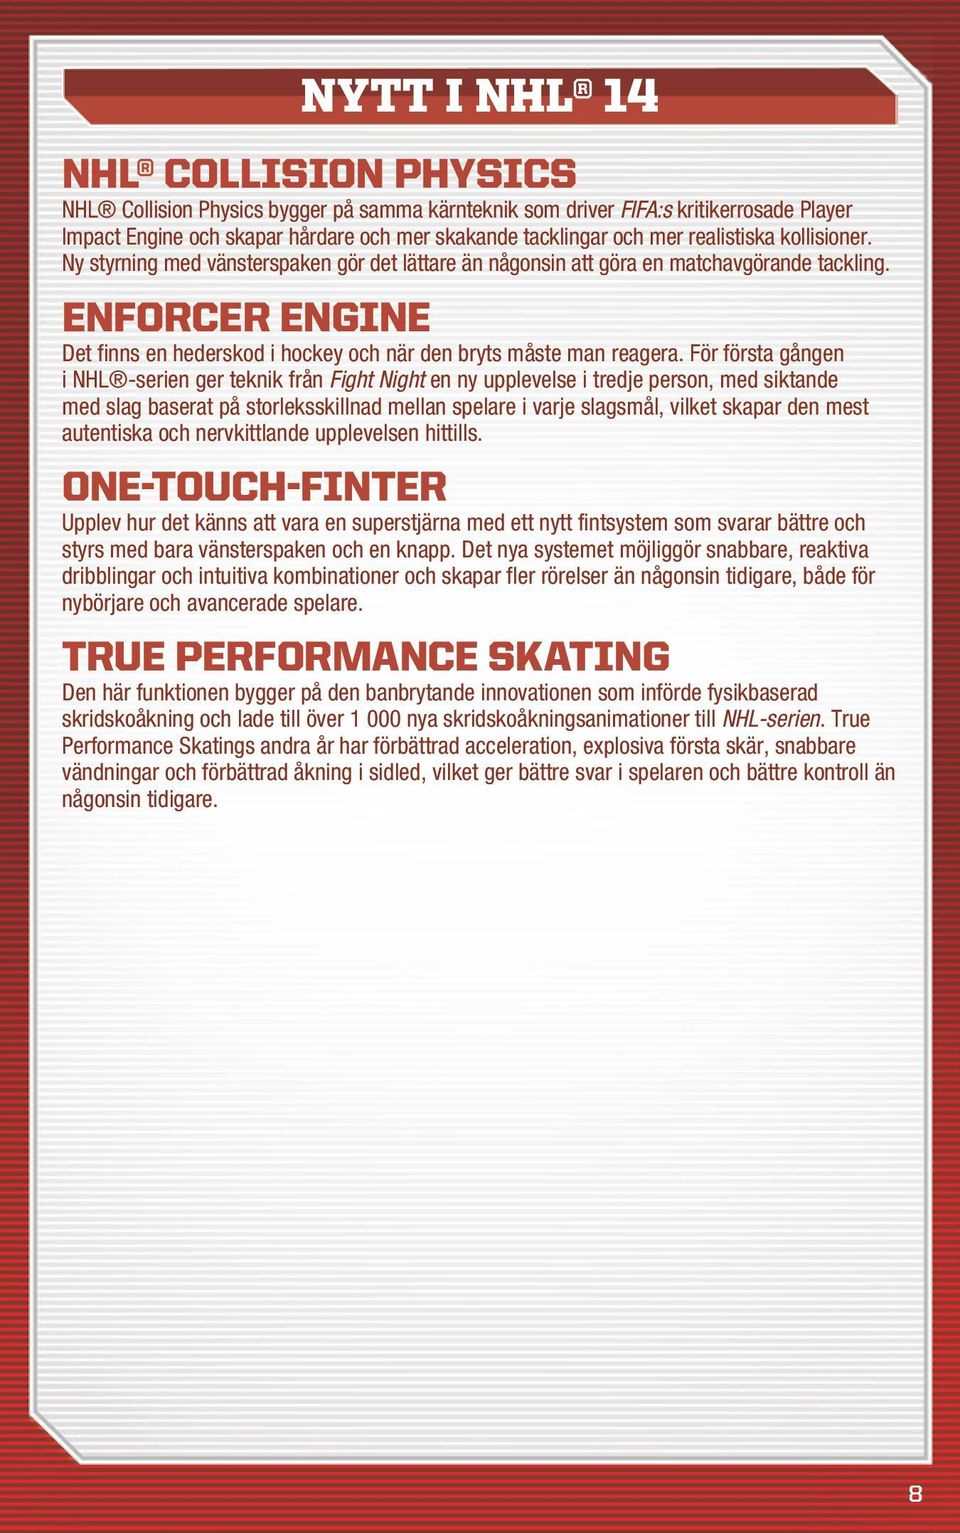 Enforcer Engine Det finns en hederskod i hockey och när den bryts måste man reagera.